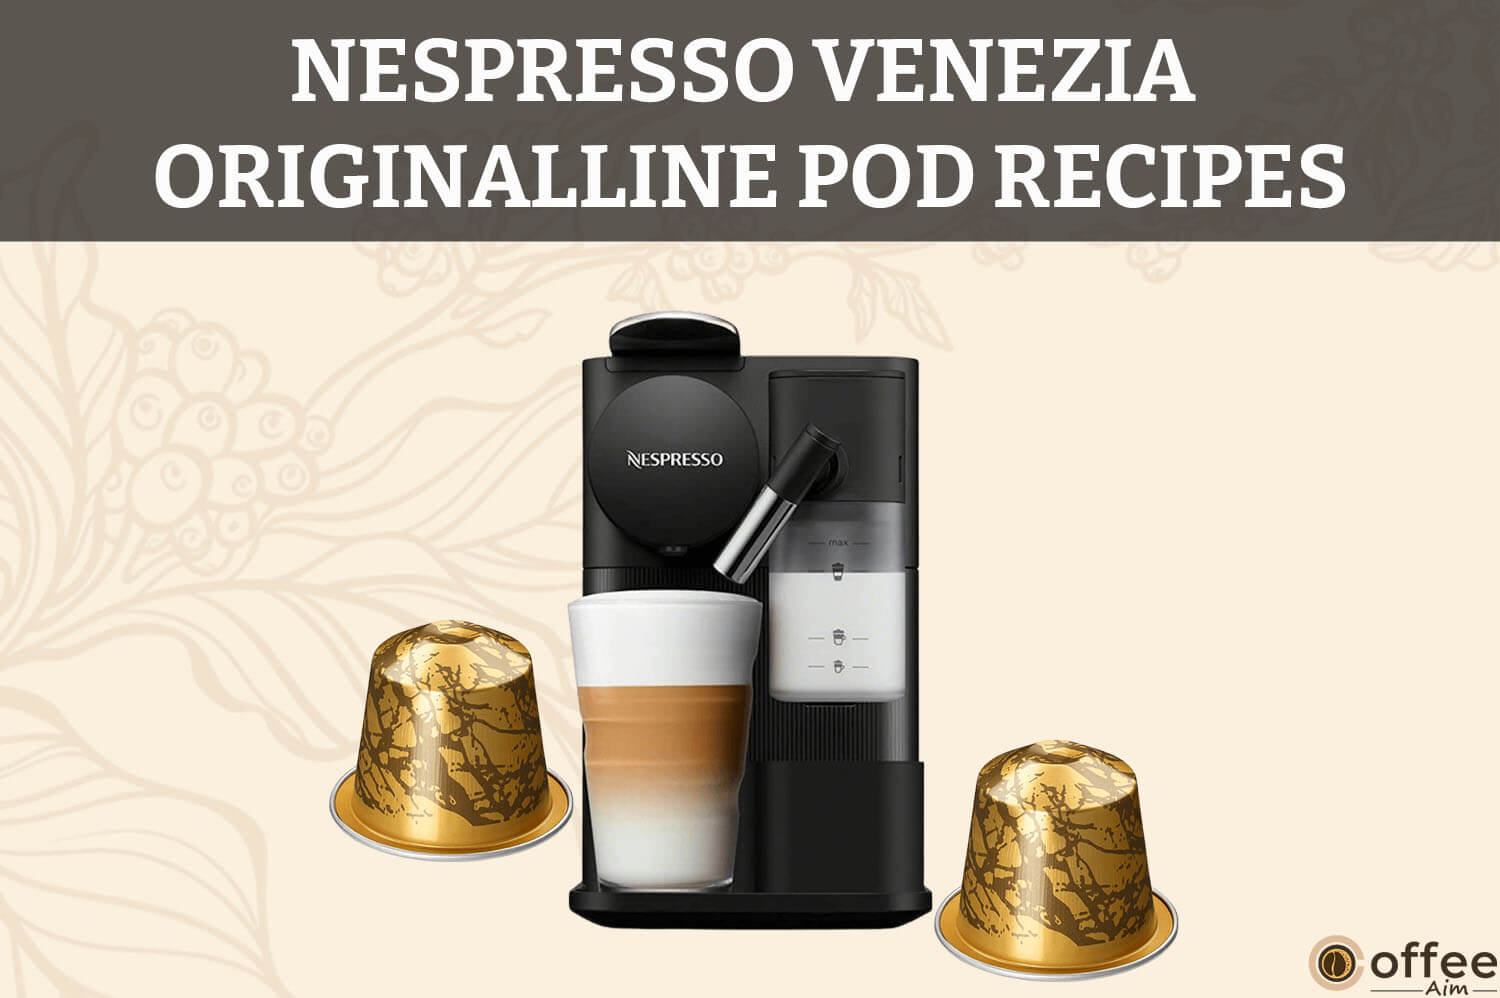 Featured image for the article "Nespresso Venezia OriginalLine Pod Recipes"